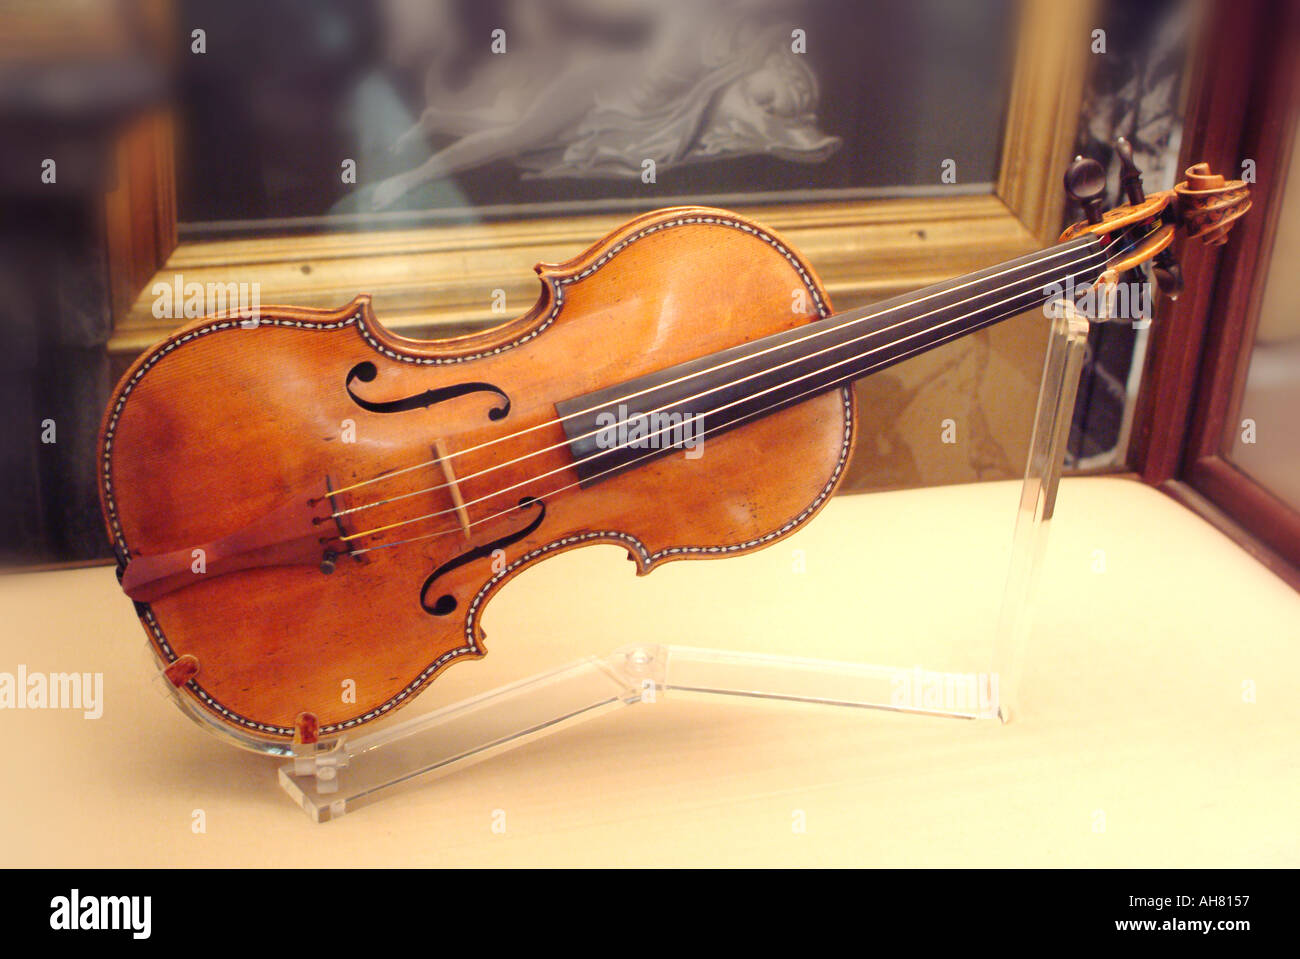 Endurecer Absorbente lo hizo Antonio Stradivarius Italian string violin Stock Photo - Alamy